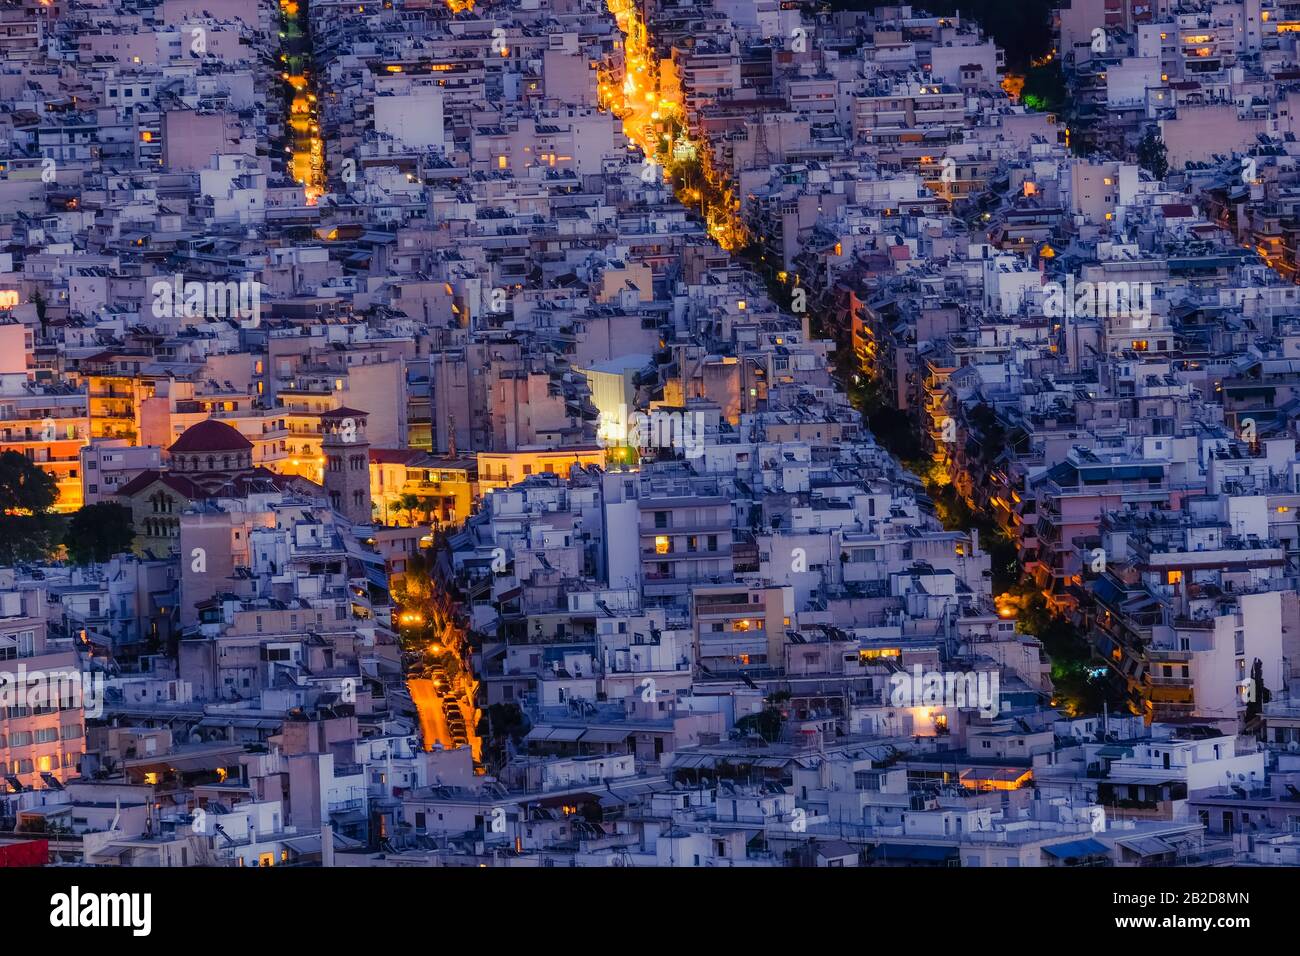 Incredibile vista notturna aerea del paesaggio urbano di Atene. Case bianche tradizionali di sera. Capitale della Grecia e famosa antica città mediterranea. Foto Stock